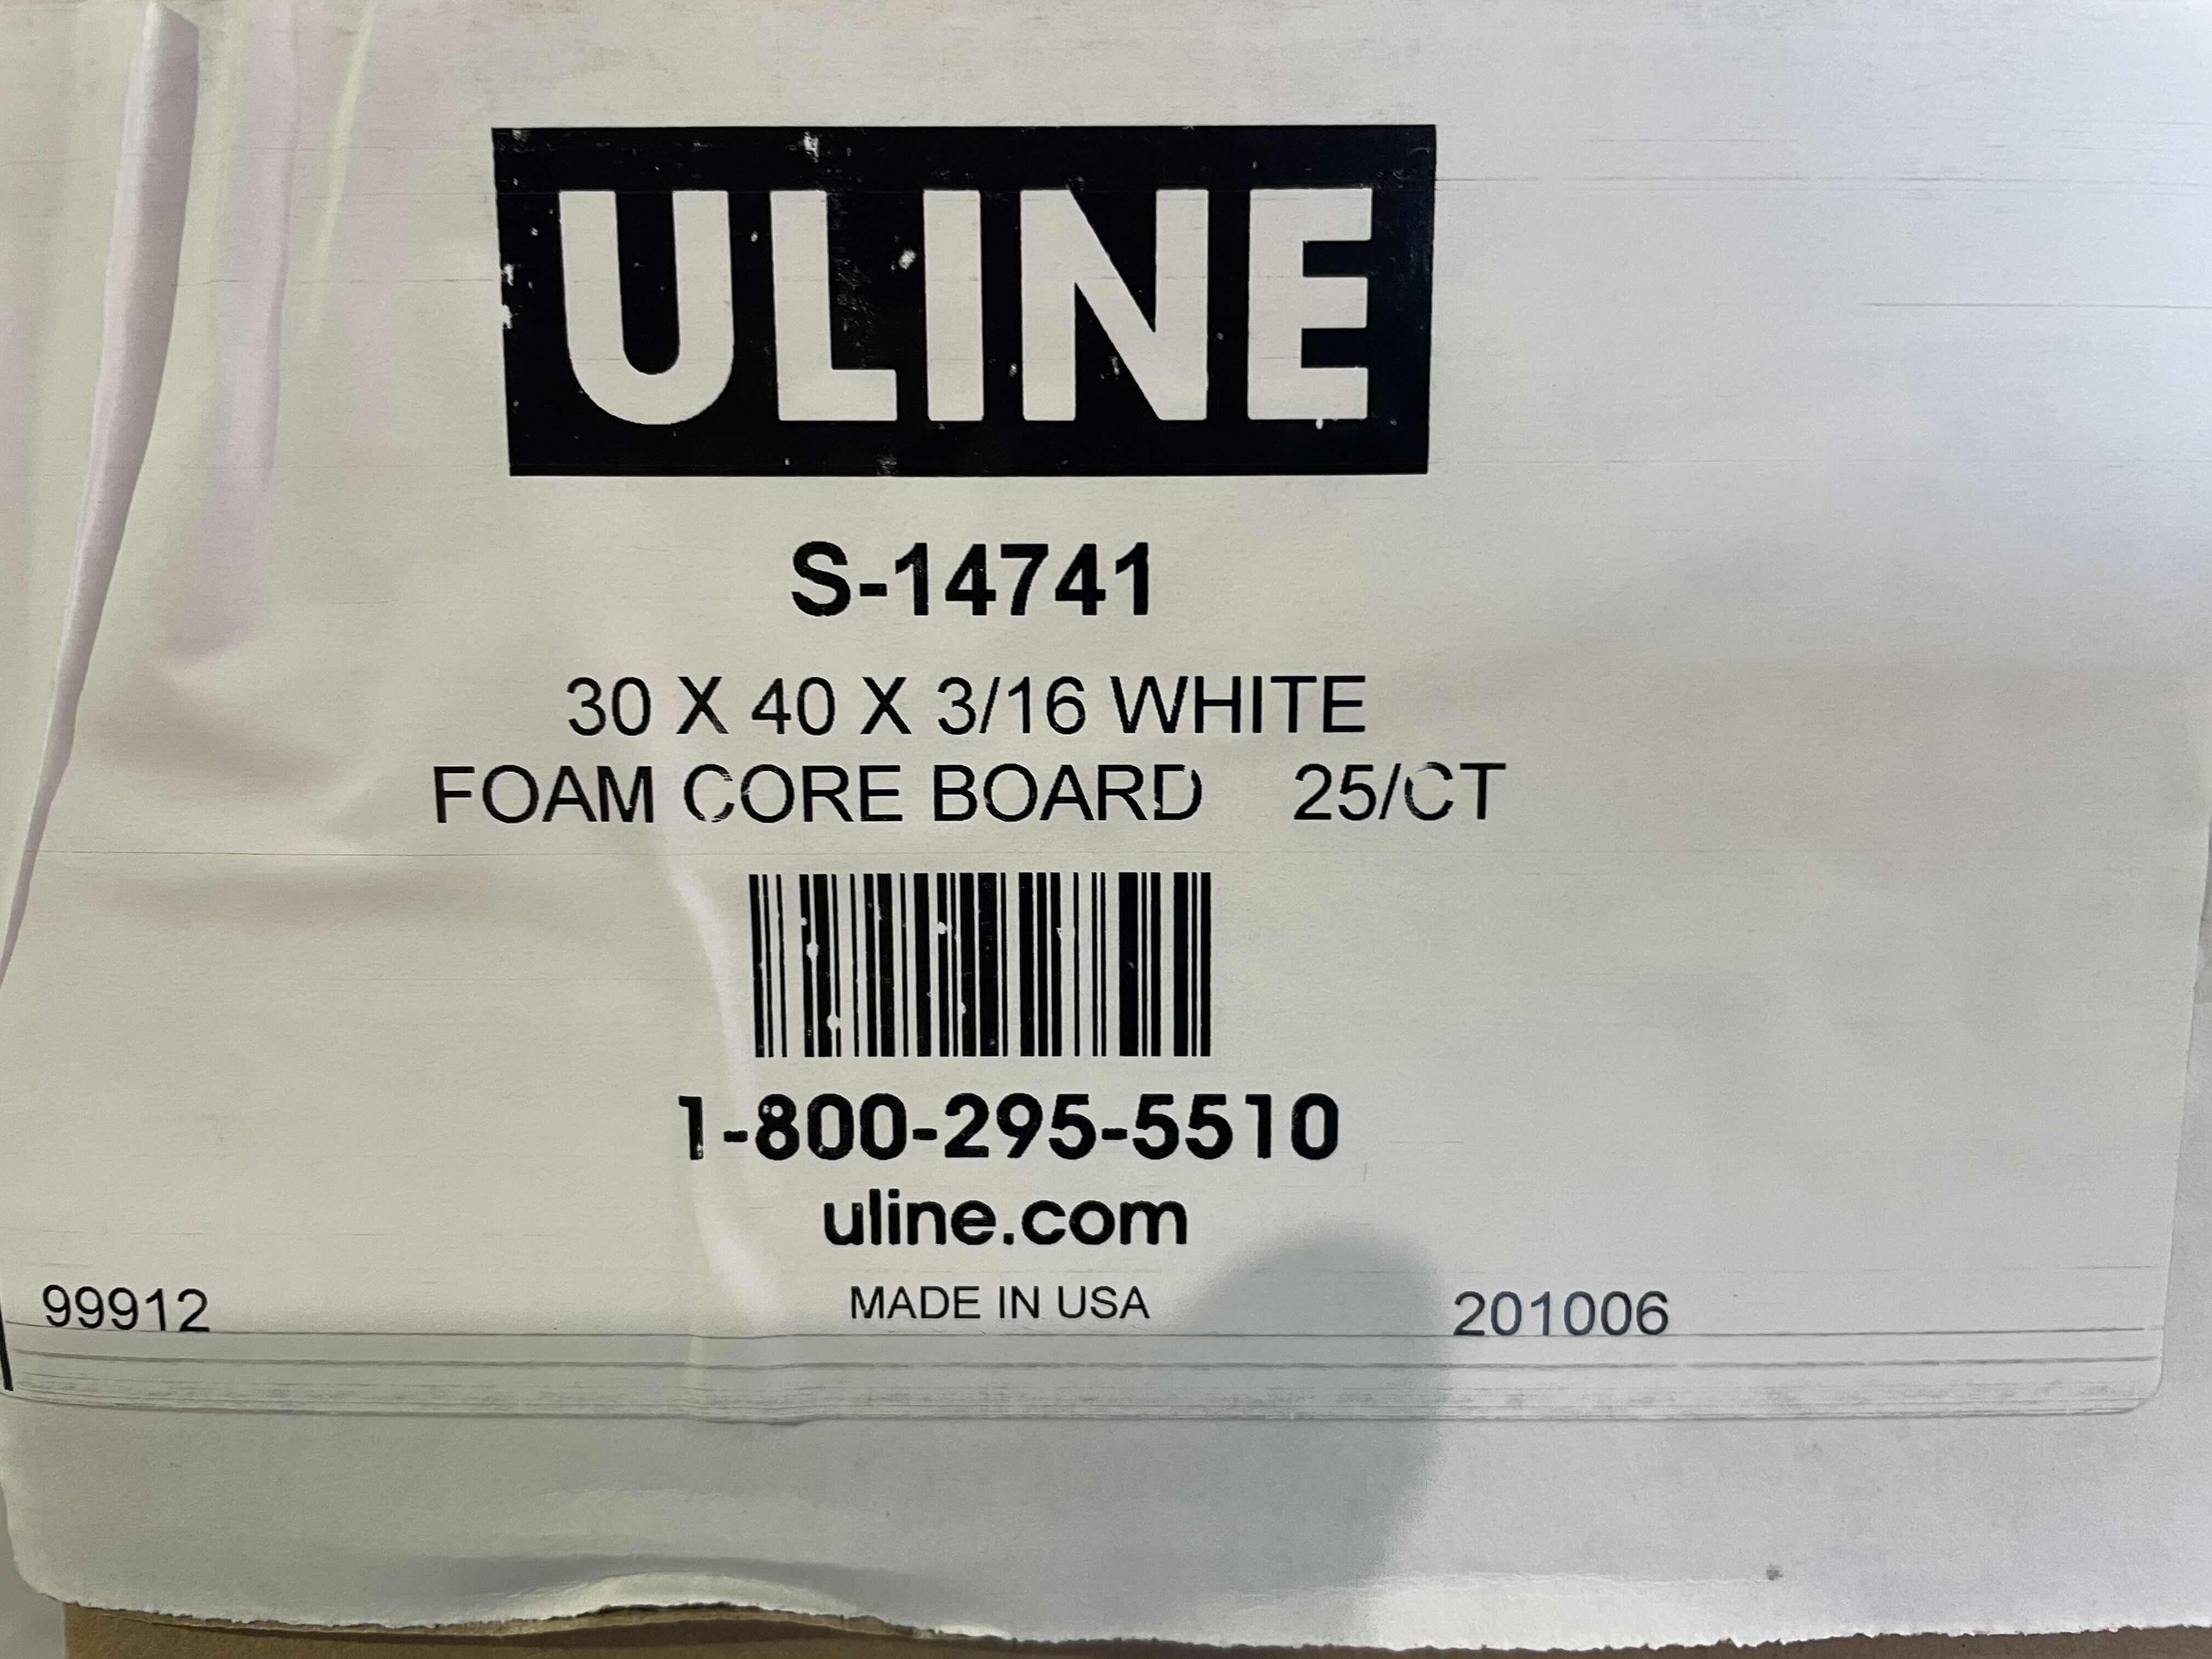 Photo 3 of ULINE S-14741 FOAM CORE BOARD - 30" X 40", WHITE, 3/16" THICK 25CT